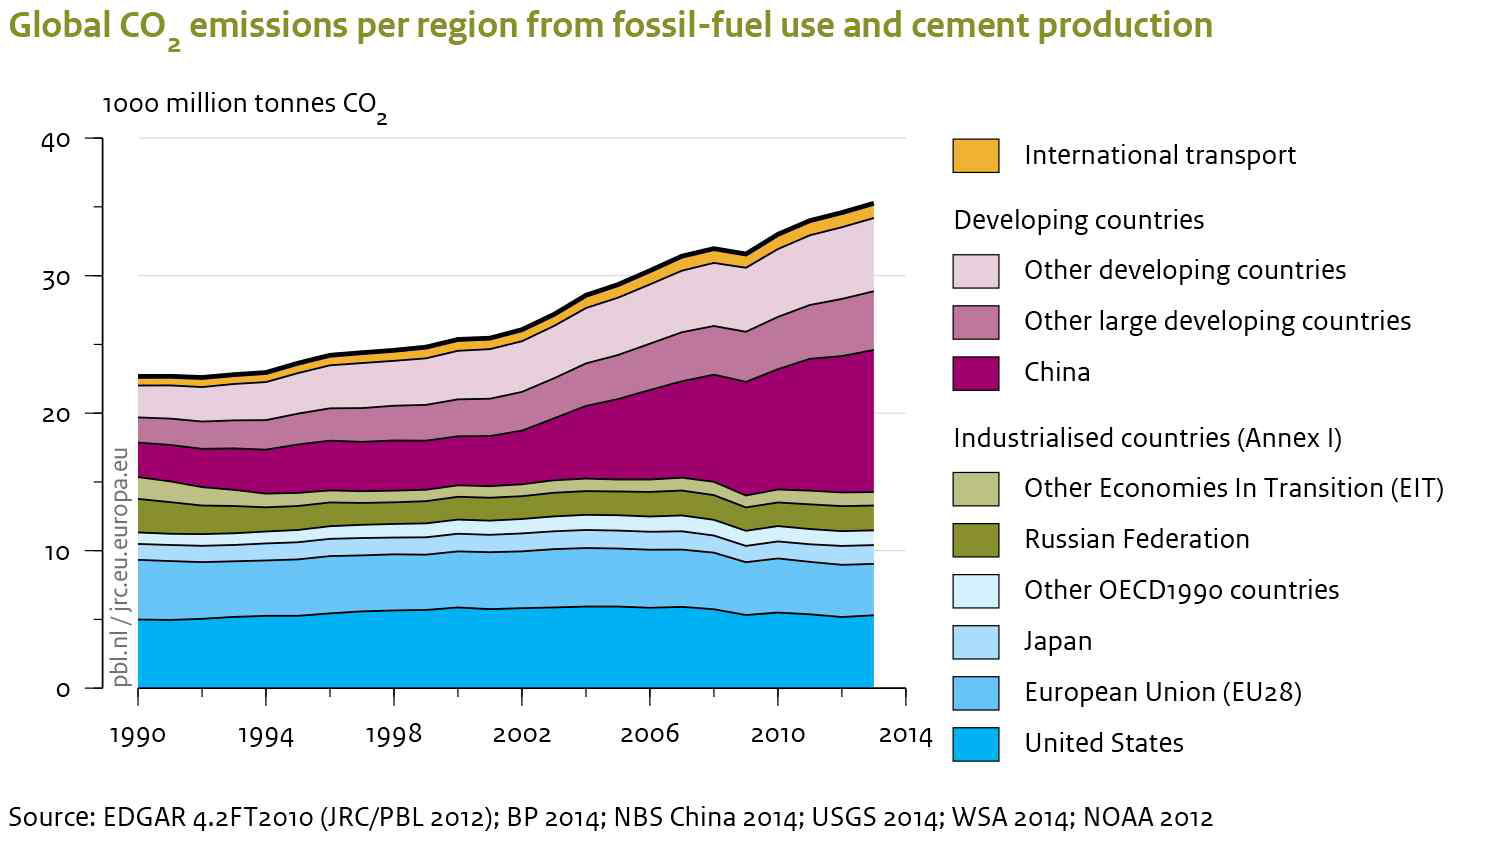 화석연료 및 건축물로 인한 글로벌 탄소배출 증가량